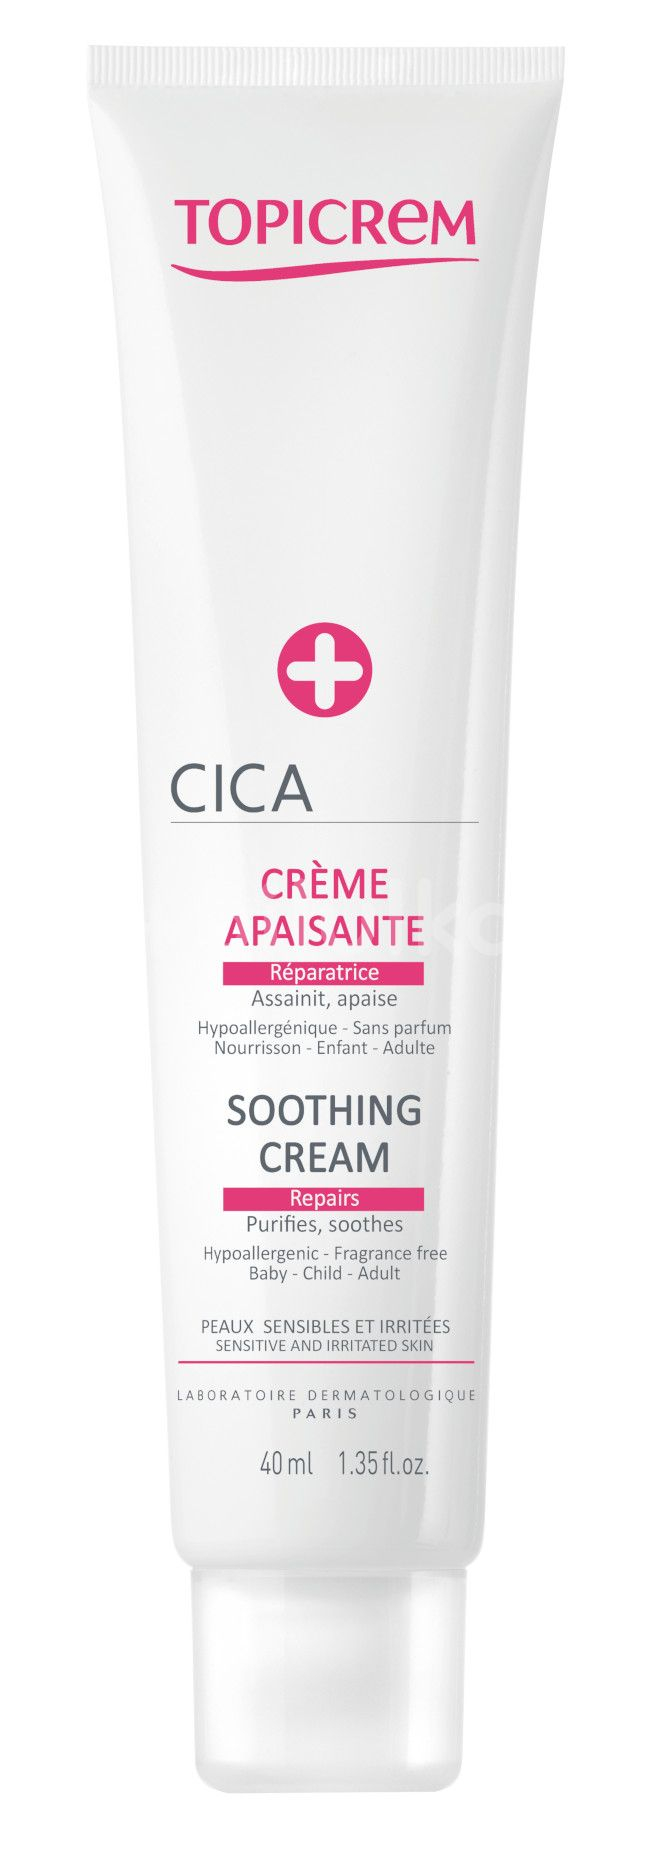 Topicrem Erneuerungscreme für gereizte Haut CICA (Soothing Cream) 40 ml